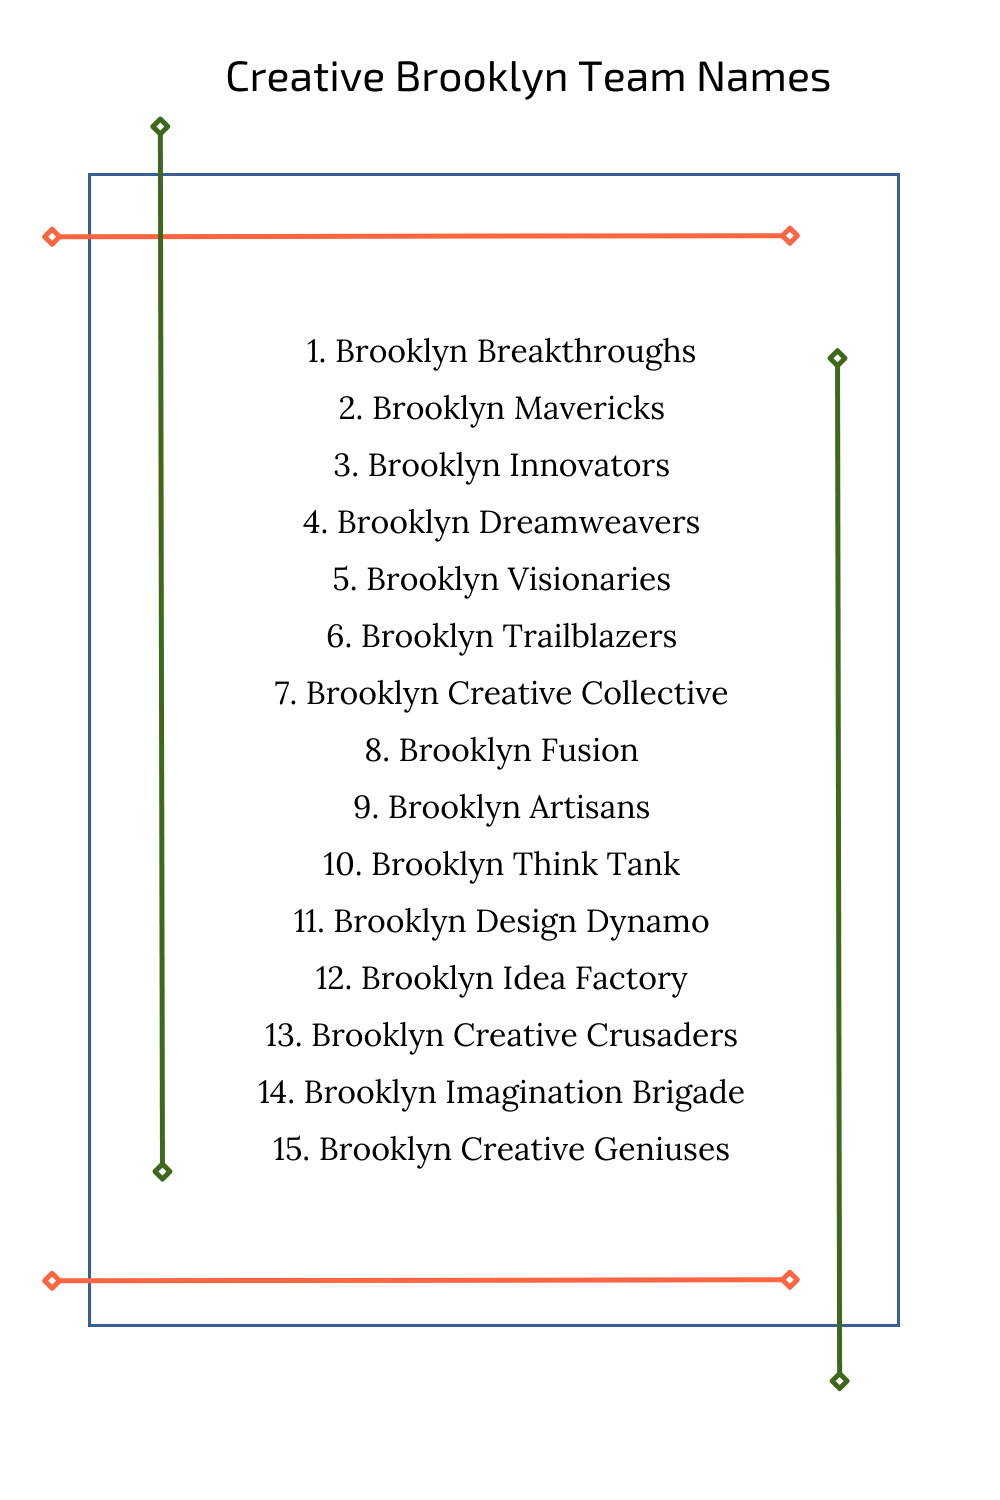 Creative Brooklyn Team Names